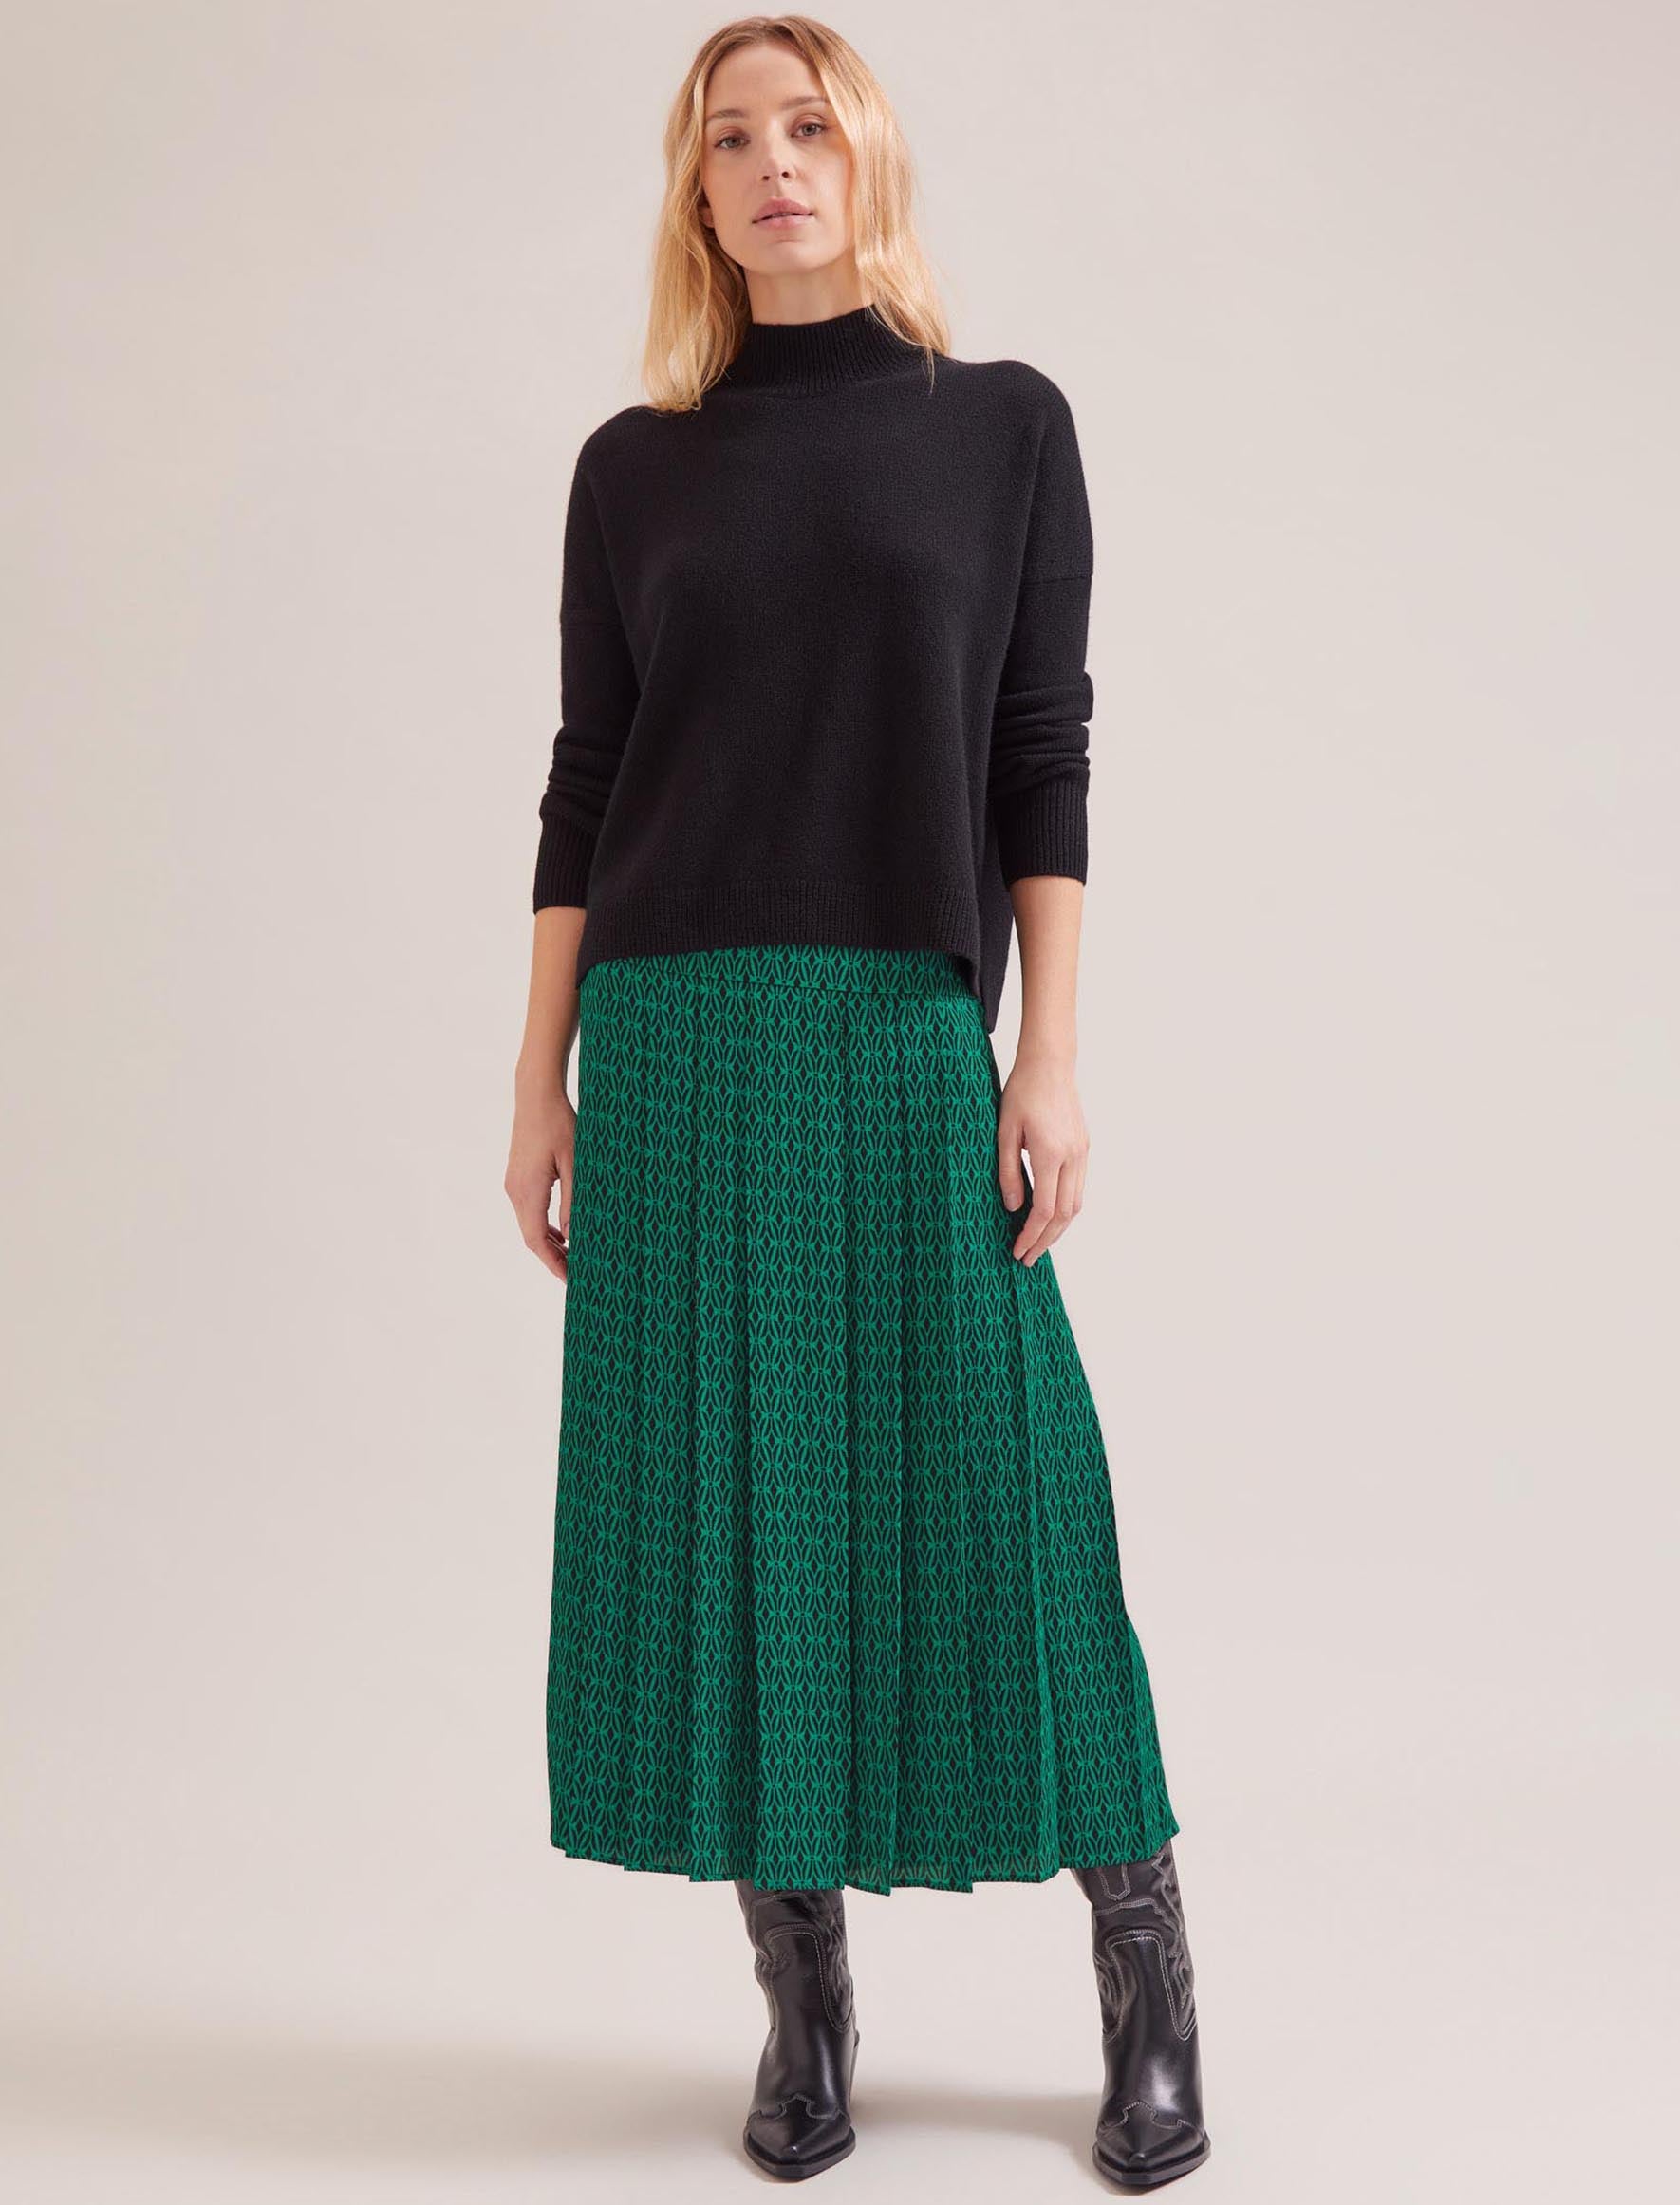 Cefinn Sienna Maxi Skirt - Green Black Trellis Print